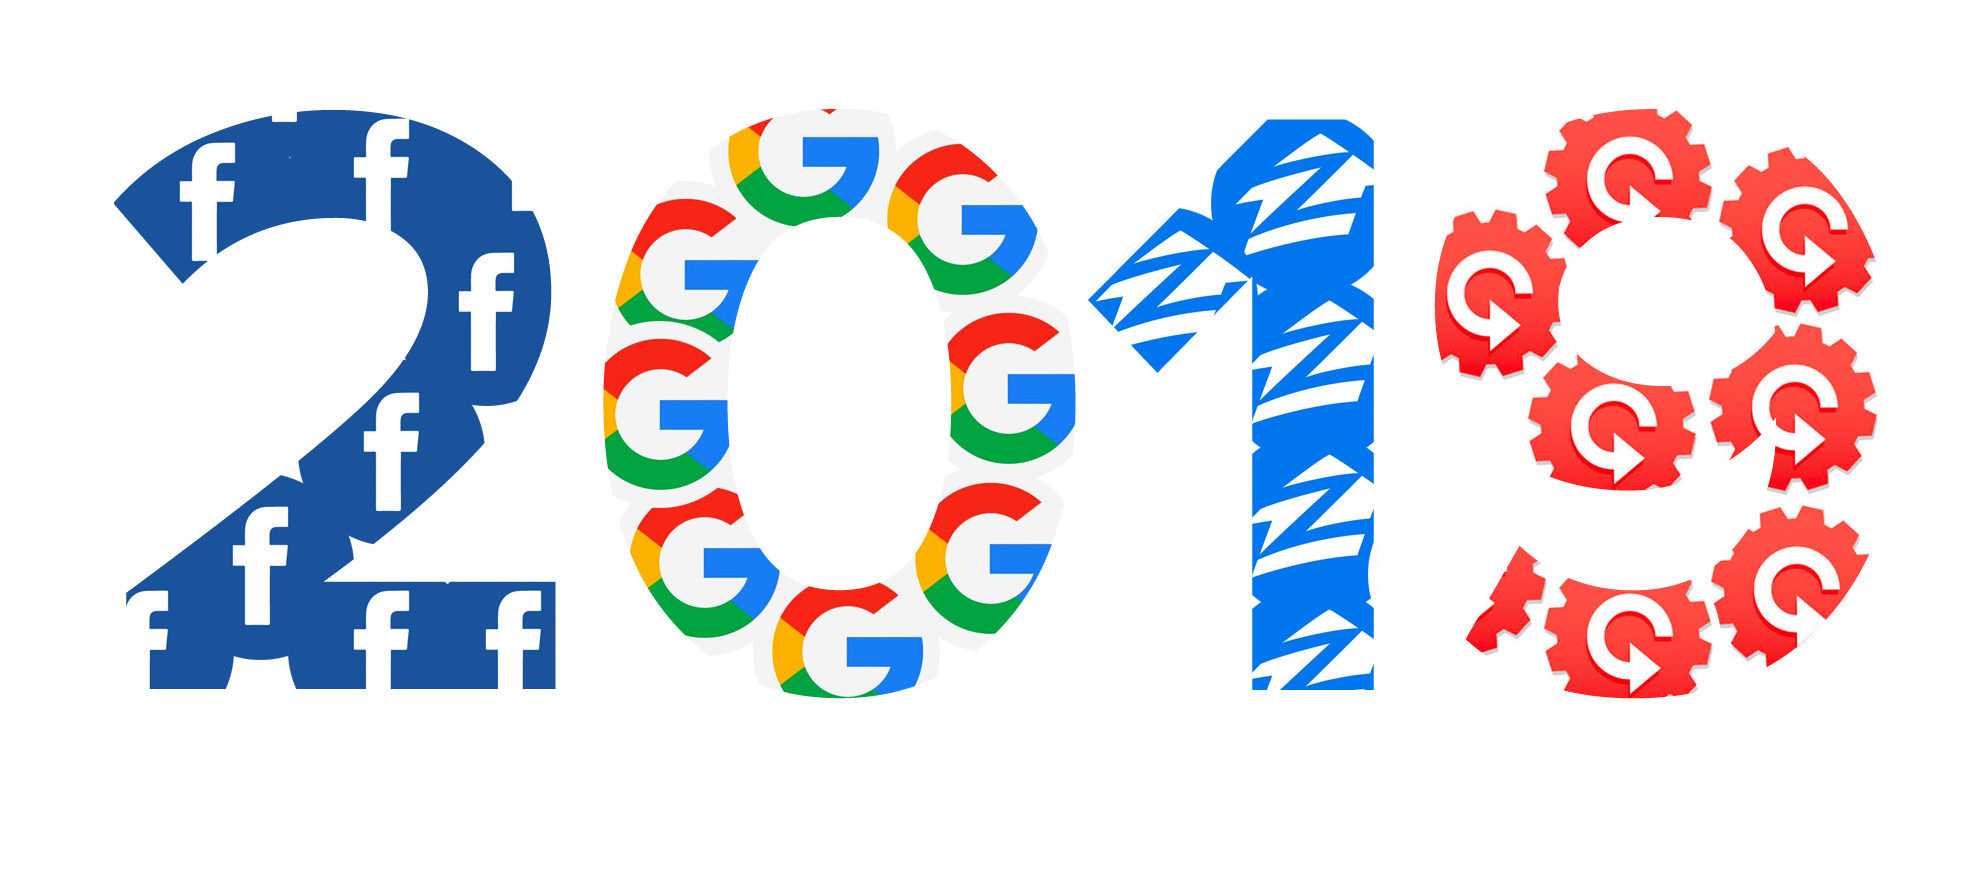 اطلاعات جدیدی از محصولات گوگل برای سال ۲۰۱۹ لو رفت